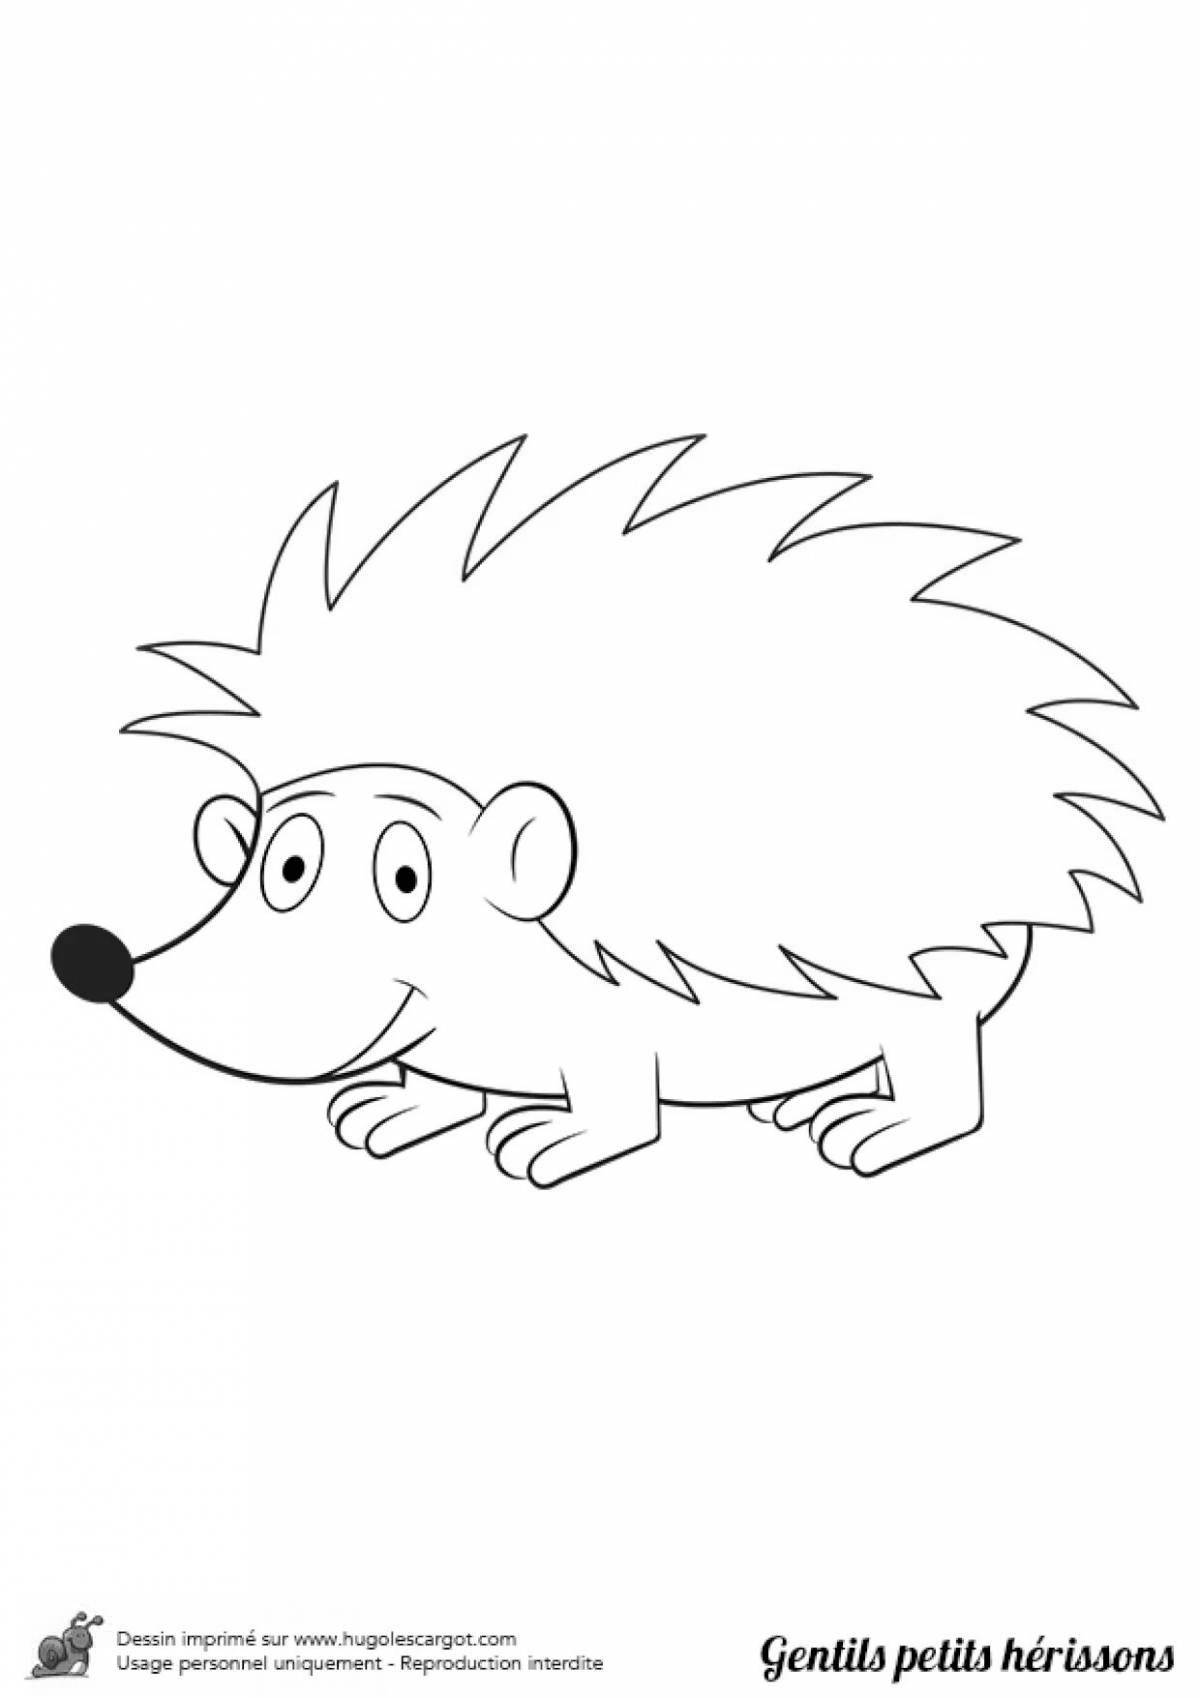 Wonderful drawing of a hedgehog